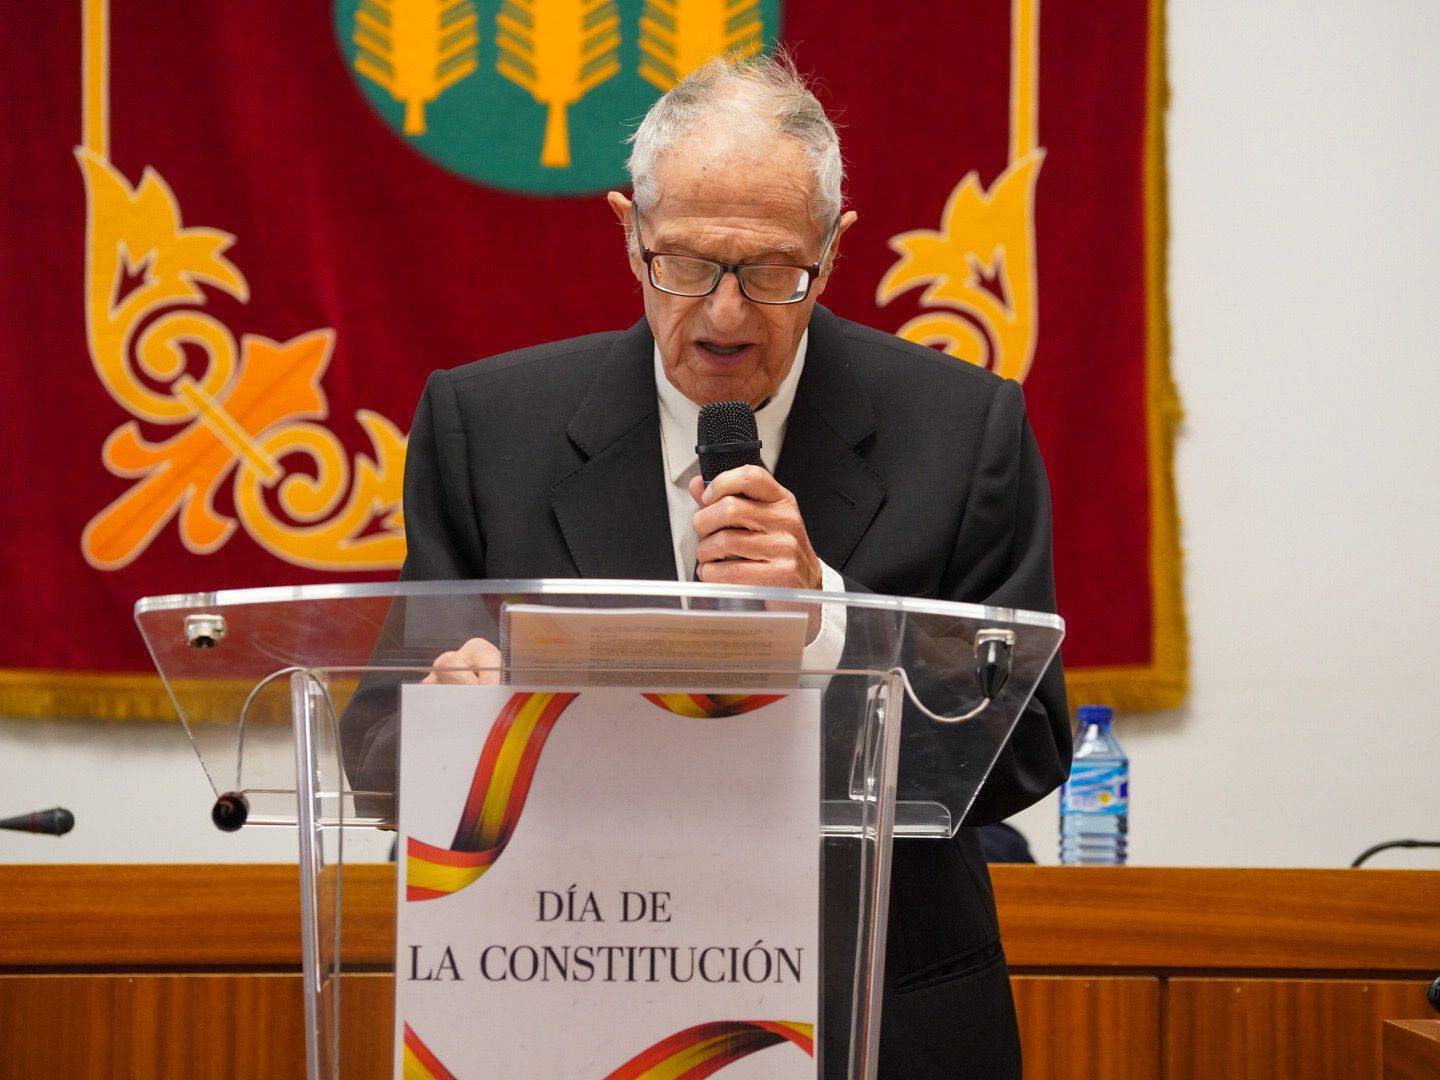 Portavoz del PSOE leyendo uno de los artículos de la Constitución.